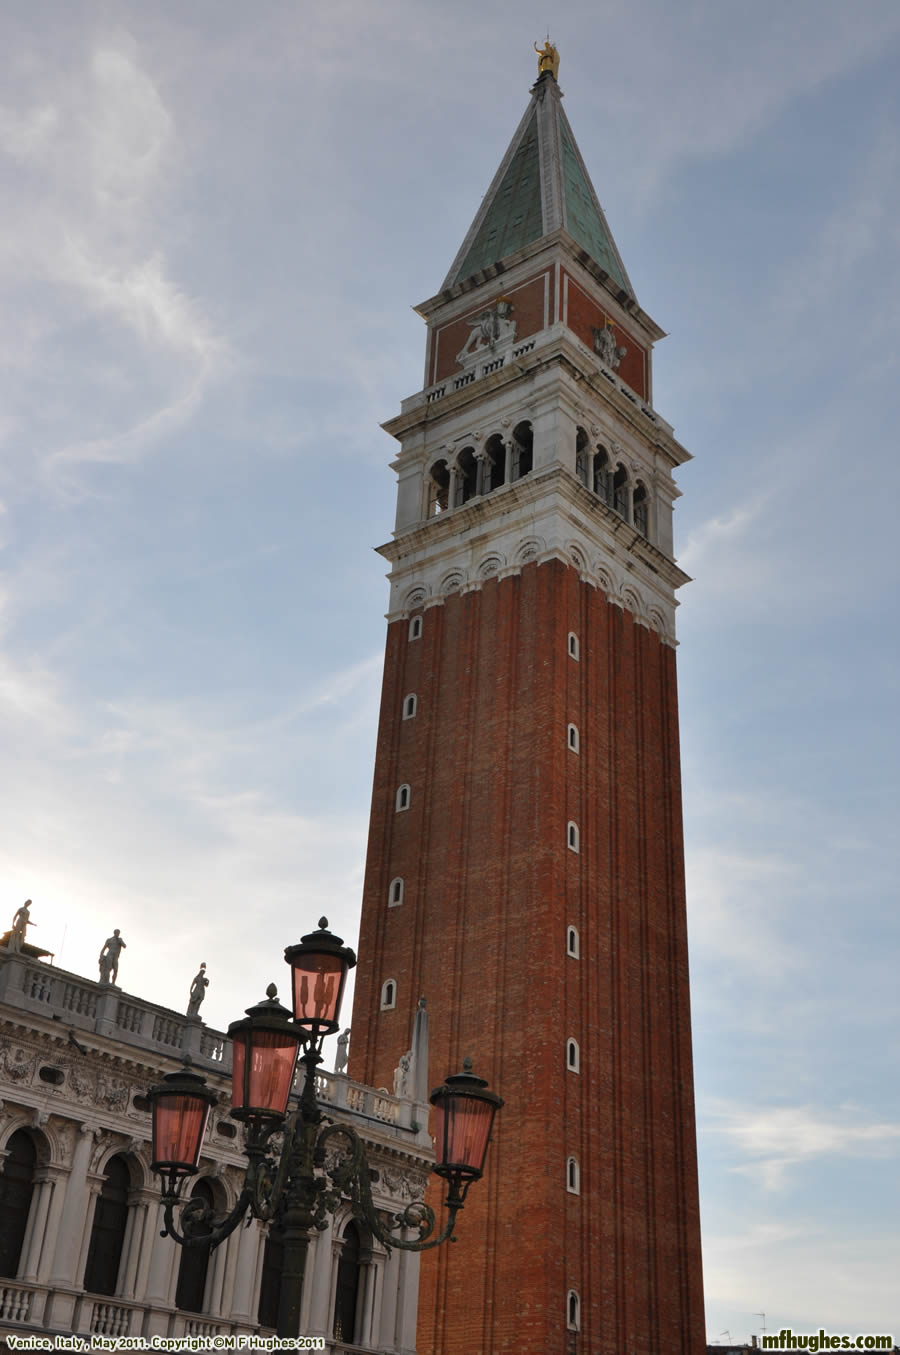 Venice in Italy, 2011.